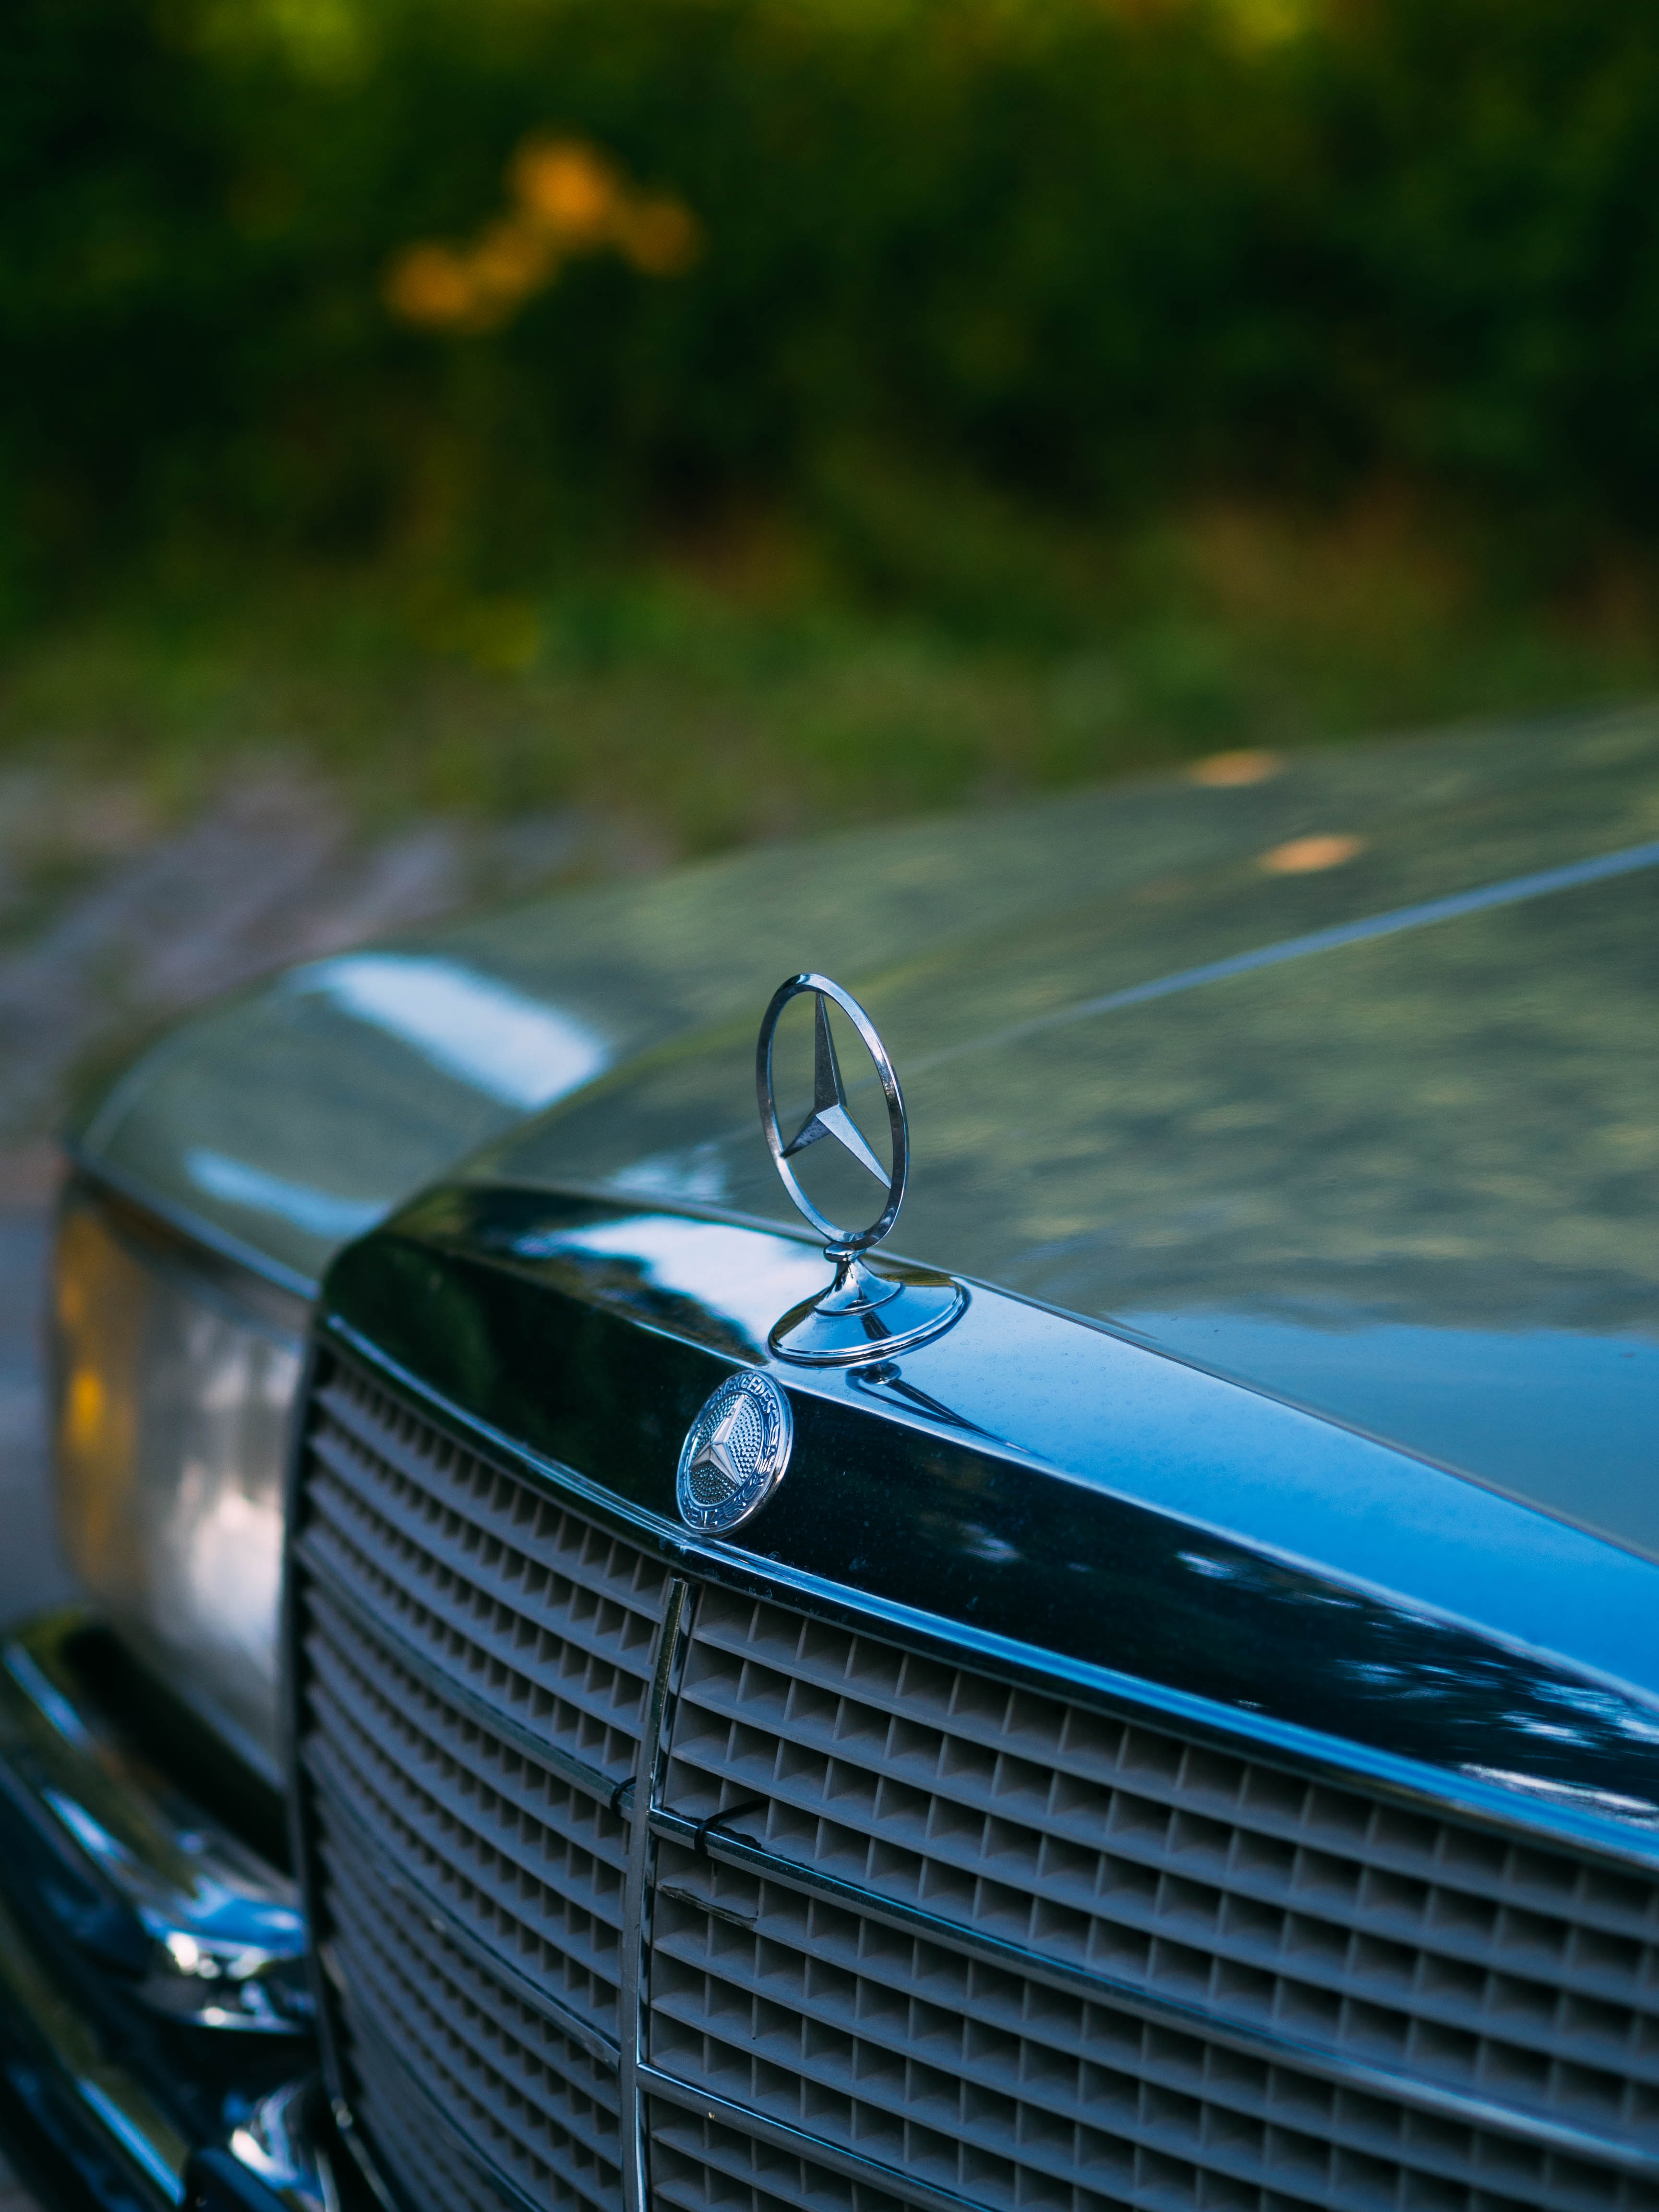 Car Mercedes Wallpapers